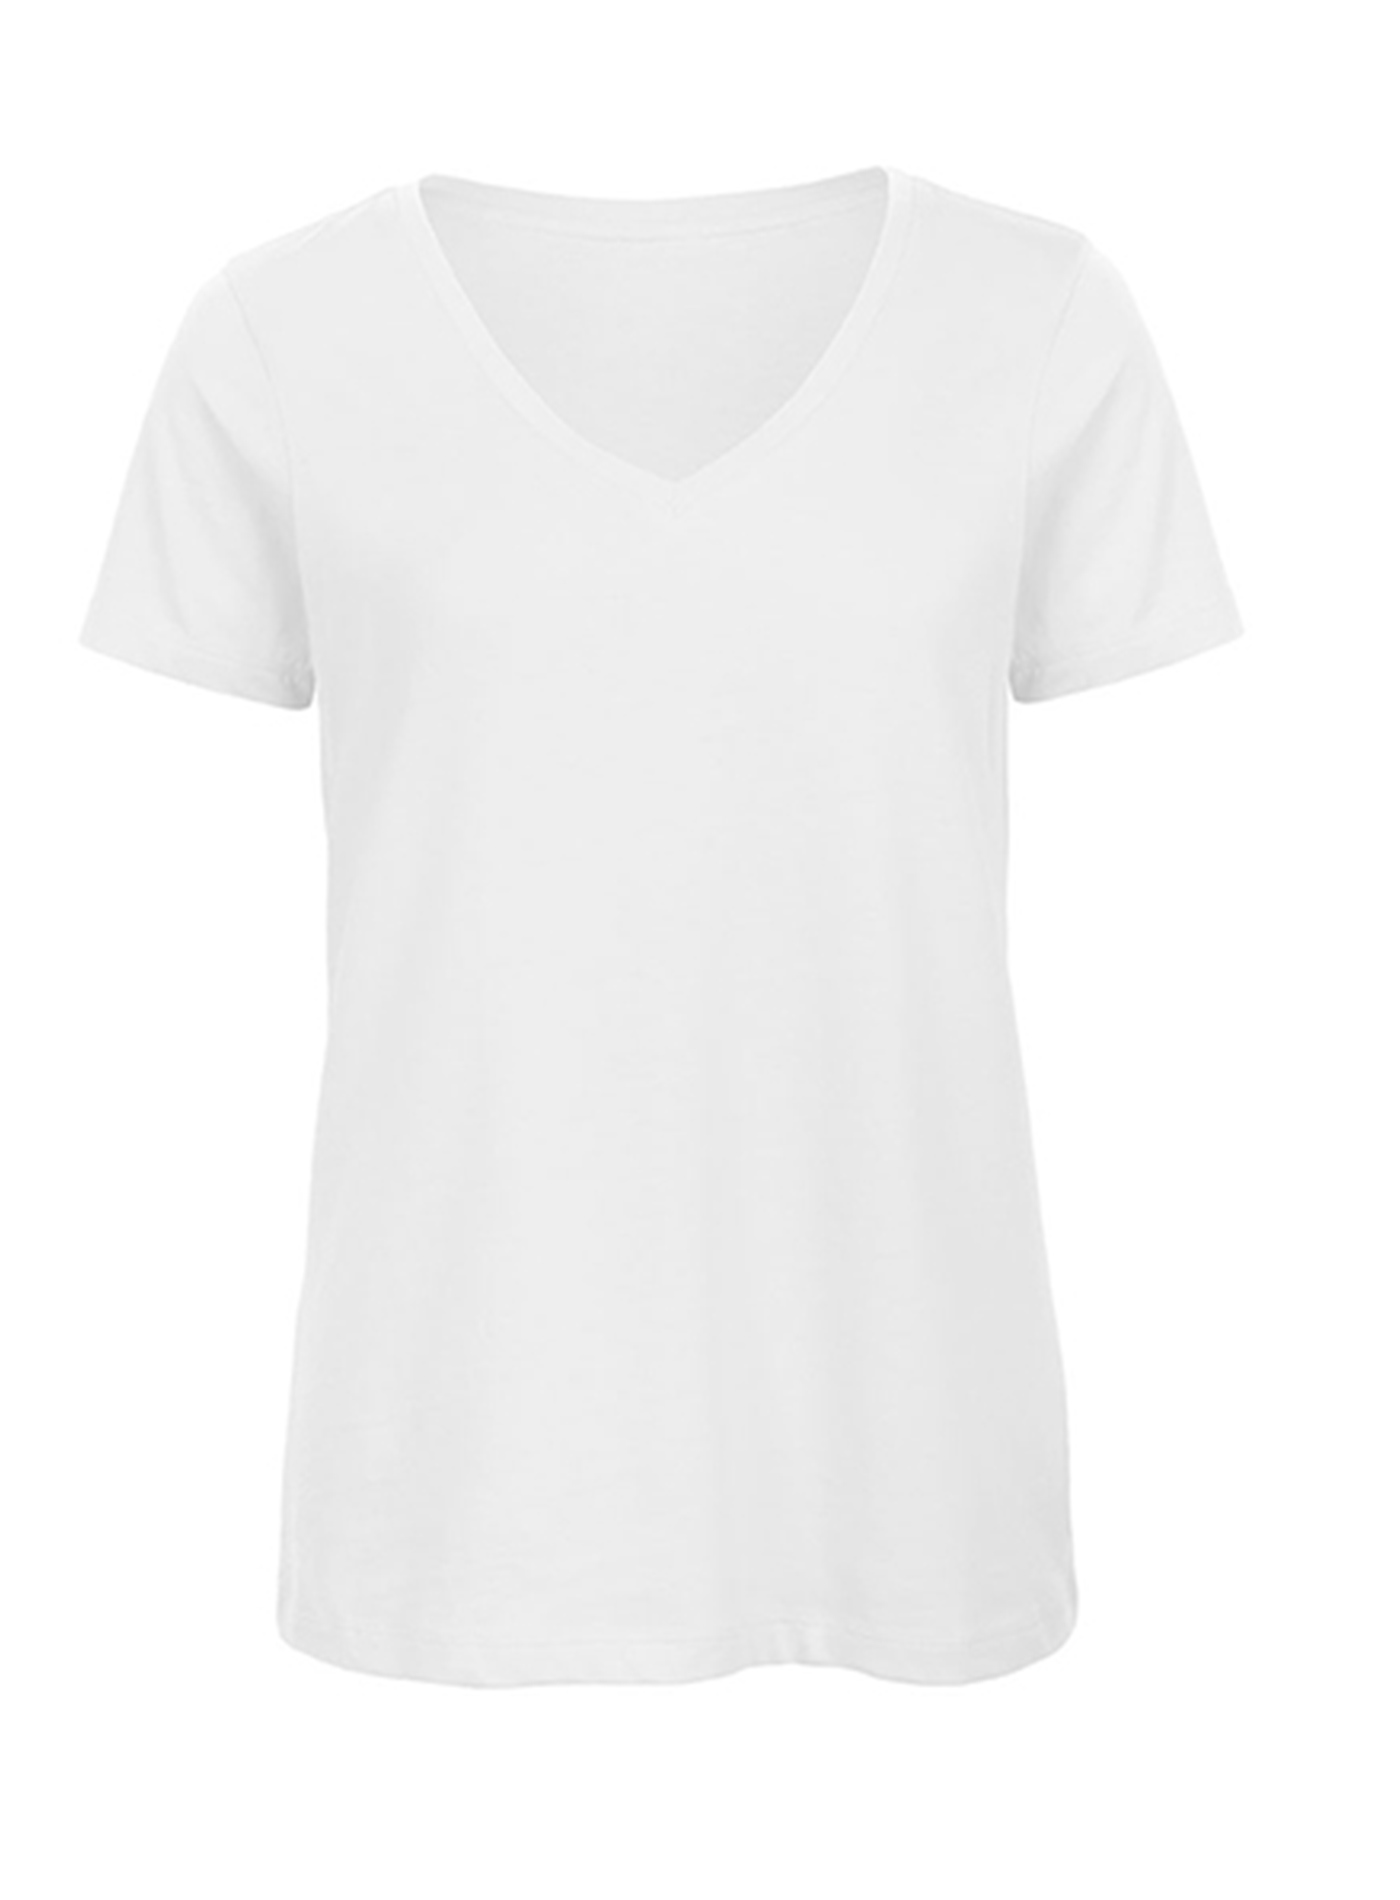 Dámské tričko s výstřihem do V B&C Collection Inspire - Bílá S